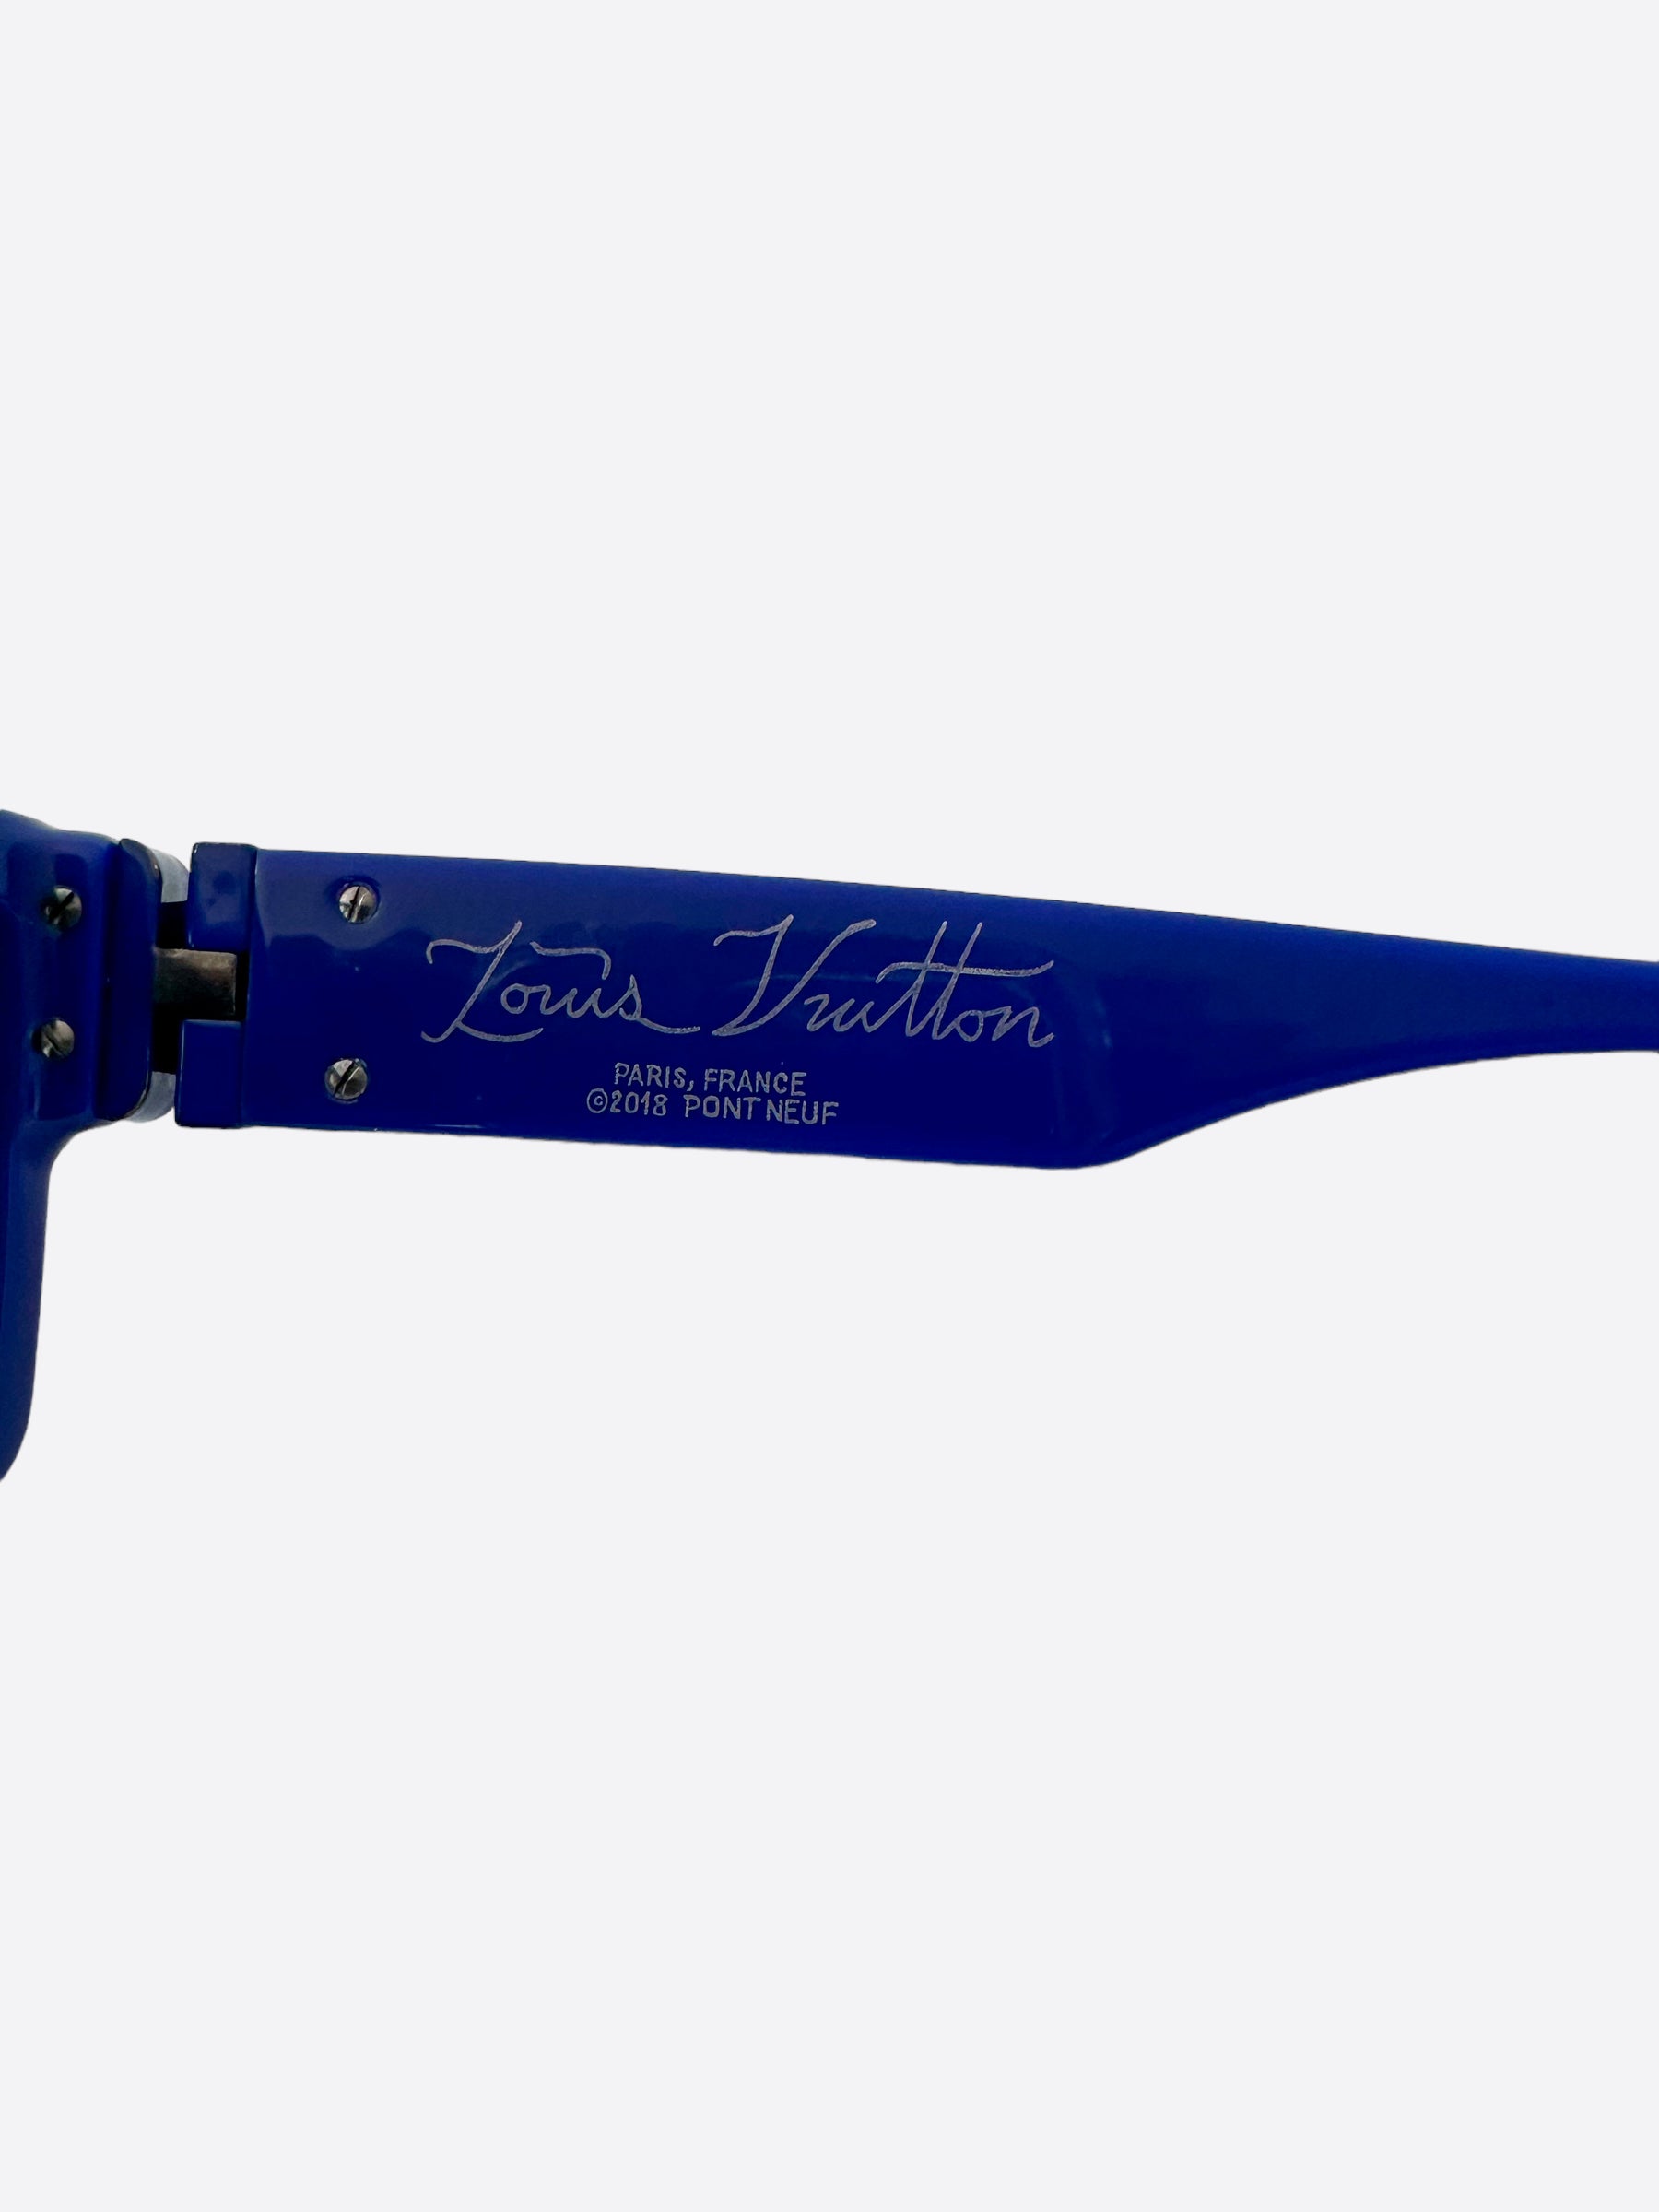 Pre-owned Louis Vuitton 1.1 Millionaires Sunglasses Black/blue